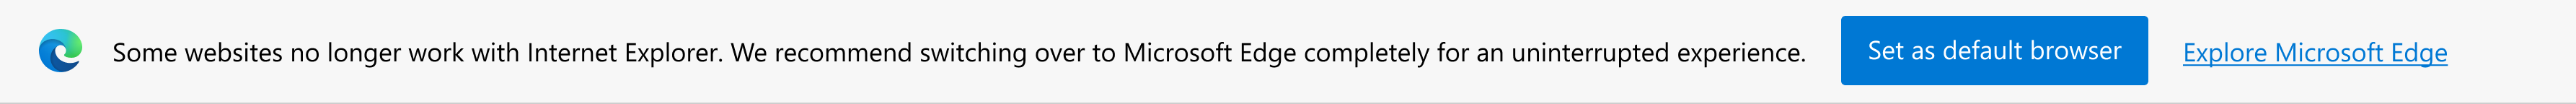 Notification sur les sites modernes et invite à définir Microsoft Edge comme navigateur par défaut ou à explorer Microsoft Edge